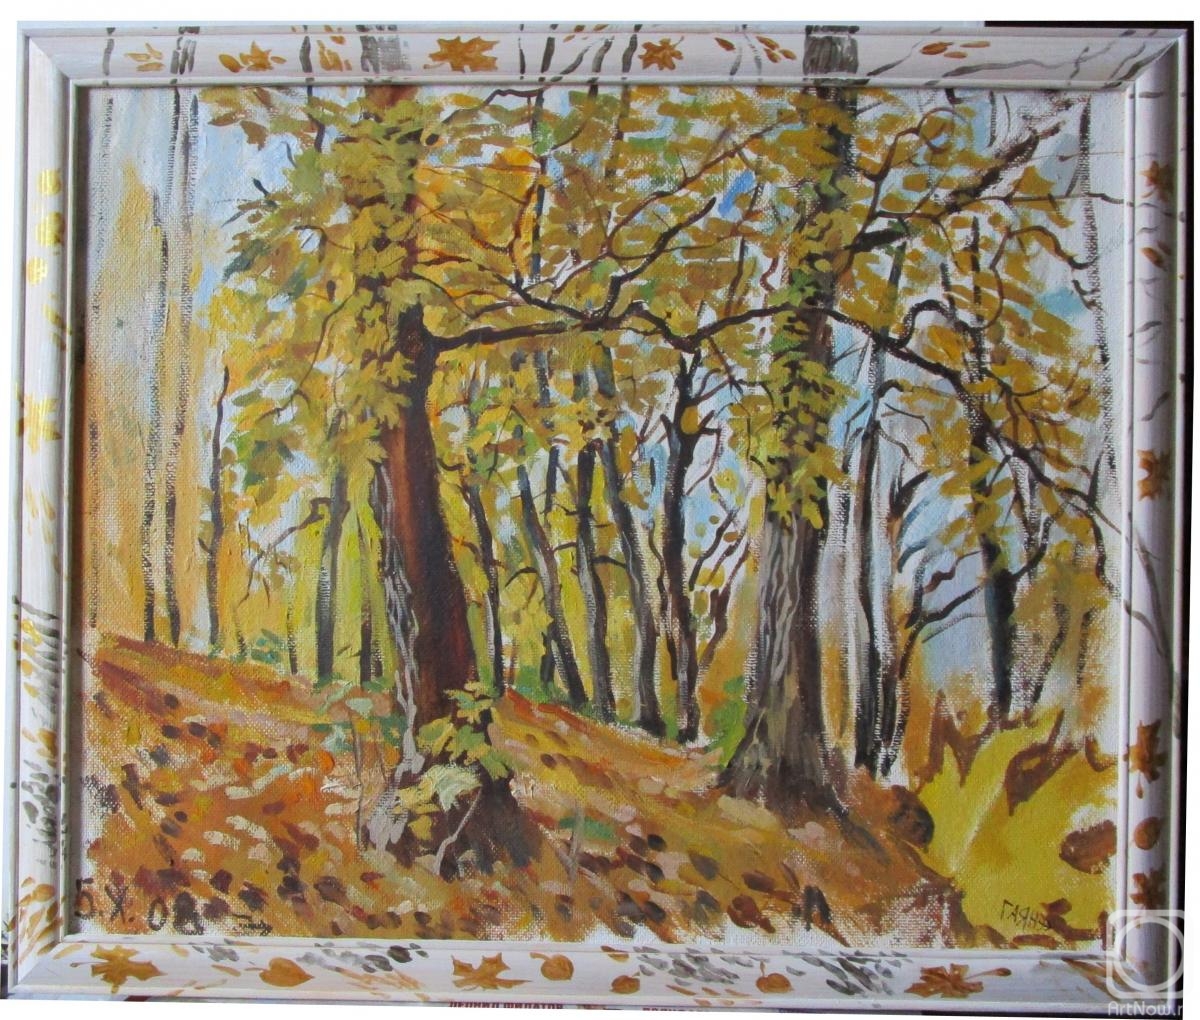 Dobrovolskaya Gayane. Frame for "Maples in the rvine"